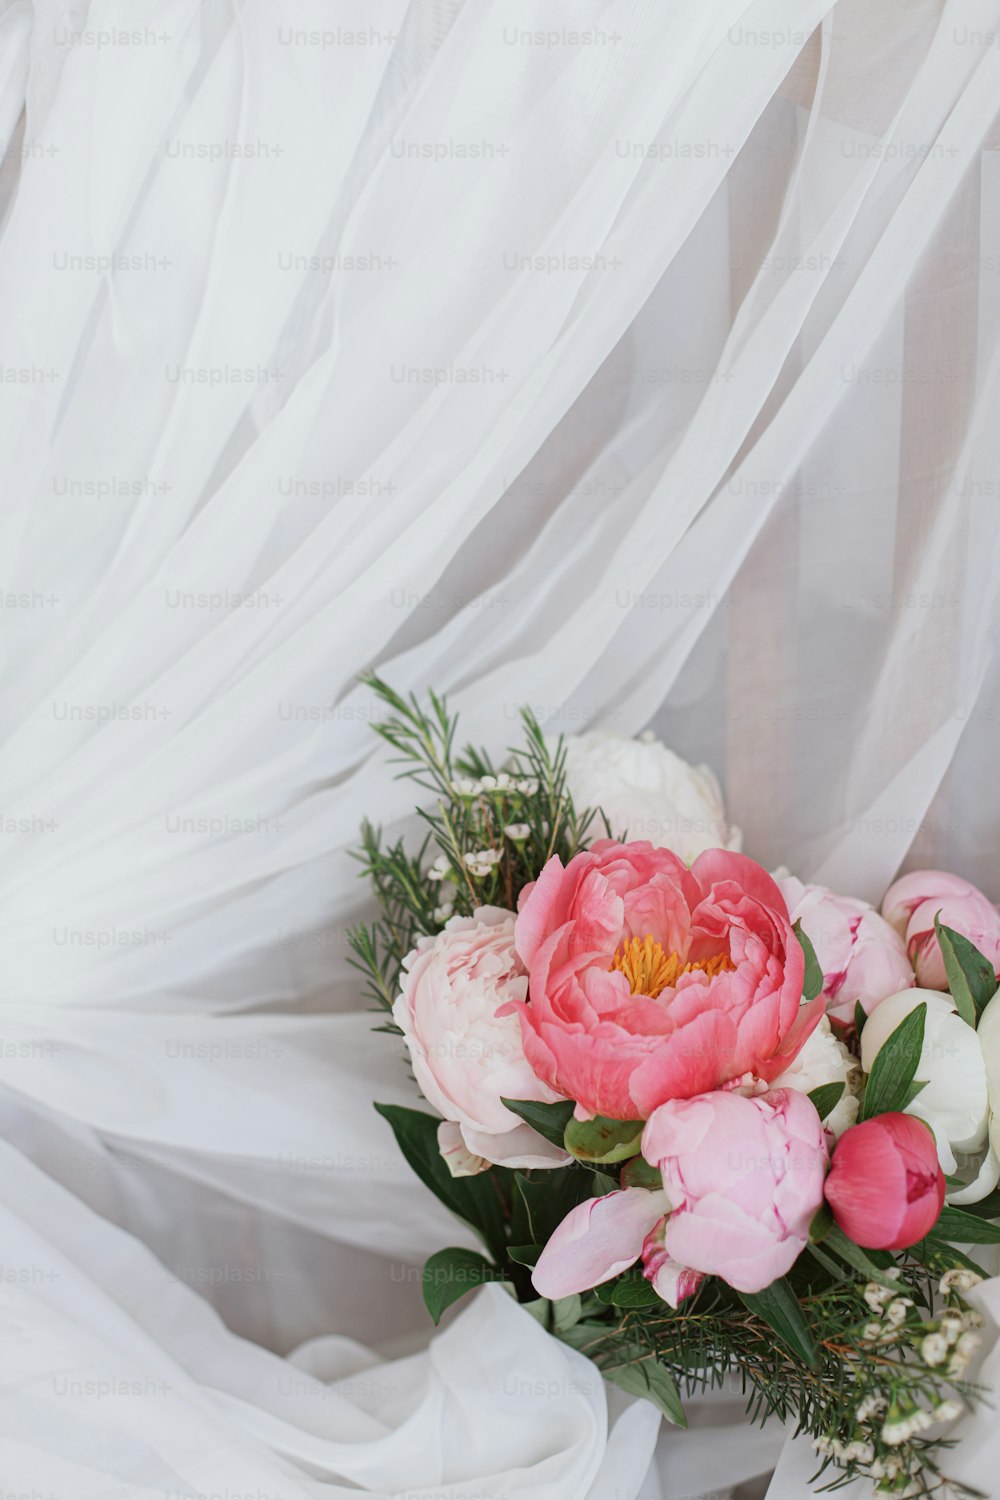 Hermoso y elegante ramo de peonías en suave tela blanca. Flores de peonía rosas y blancas sobre tul sobre silla rústica de madera. Feliz día de la madre. Mañana nupcial. Espacio para el texto